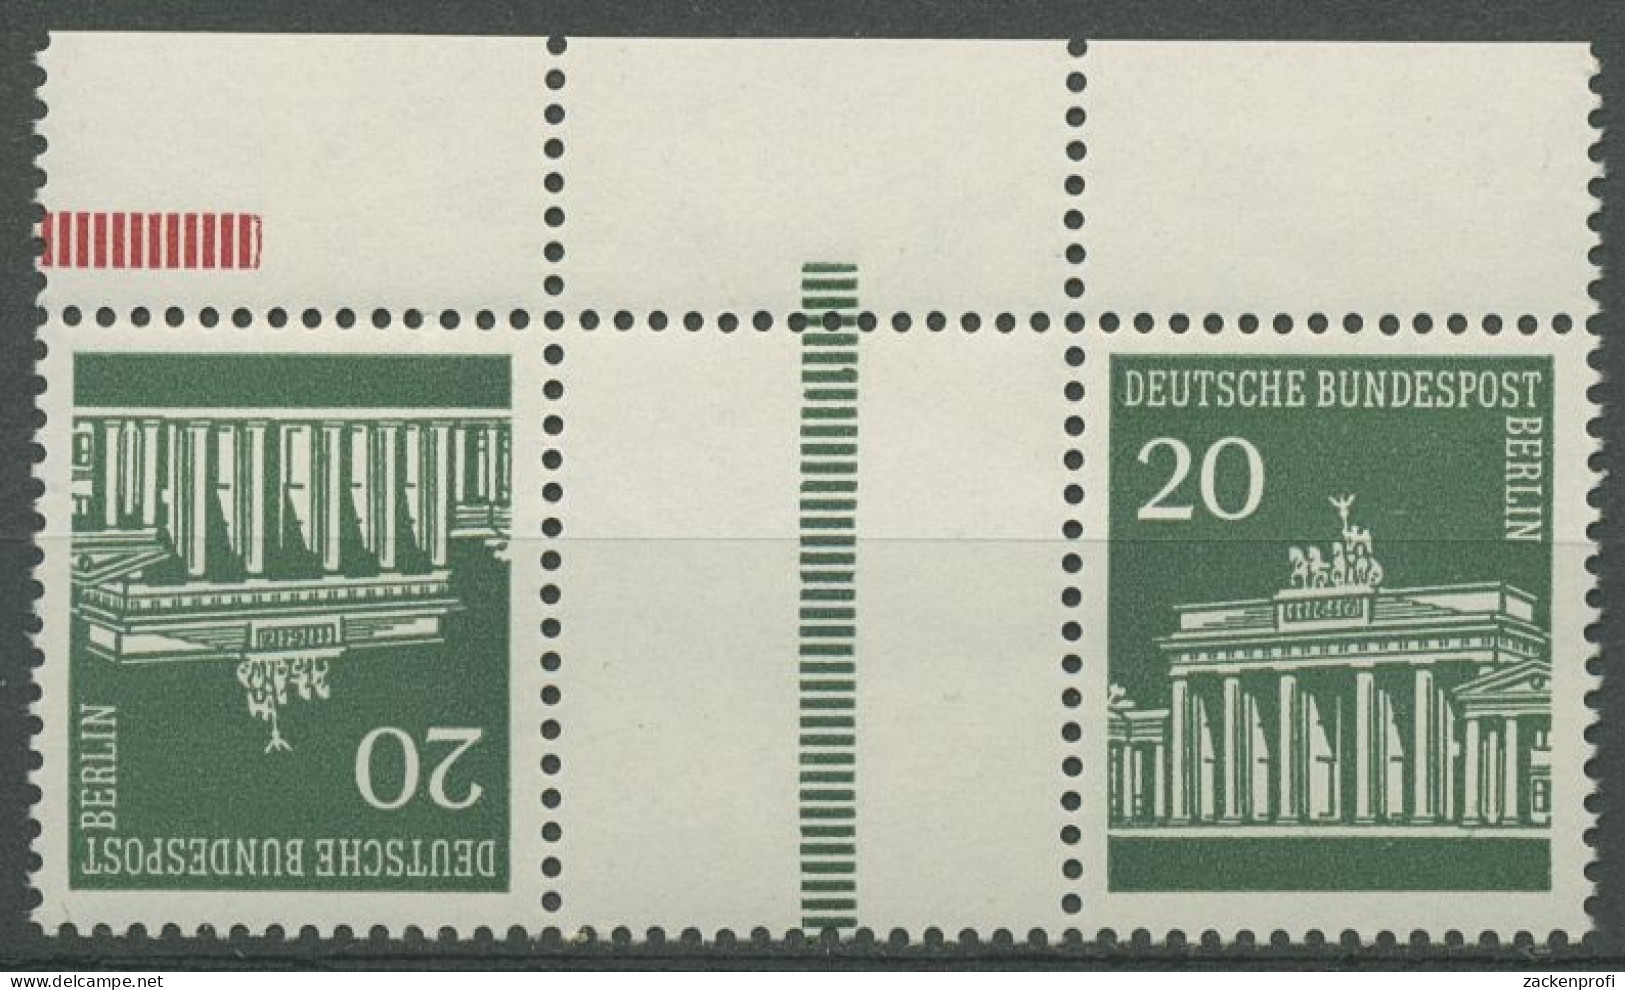 Berlin Zusammendrucke 1970 Brandenb. Tor KZ 4.1 OR (Strl. Durchgehend) Postfr. - Zusammendrucke